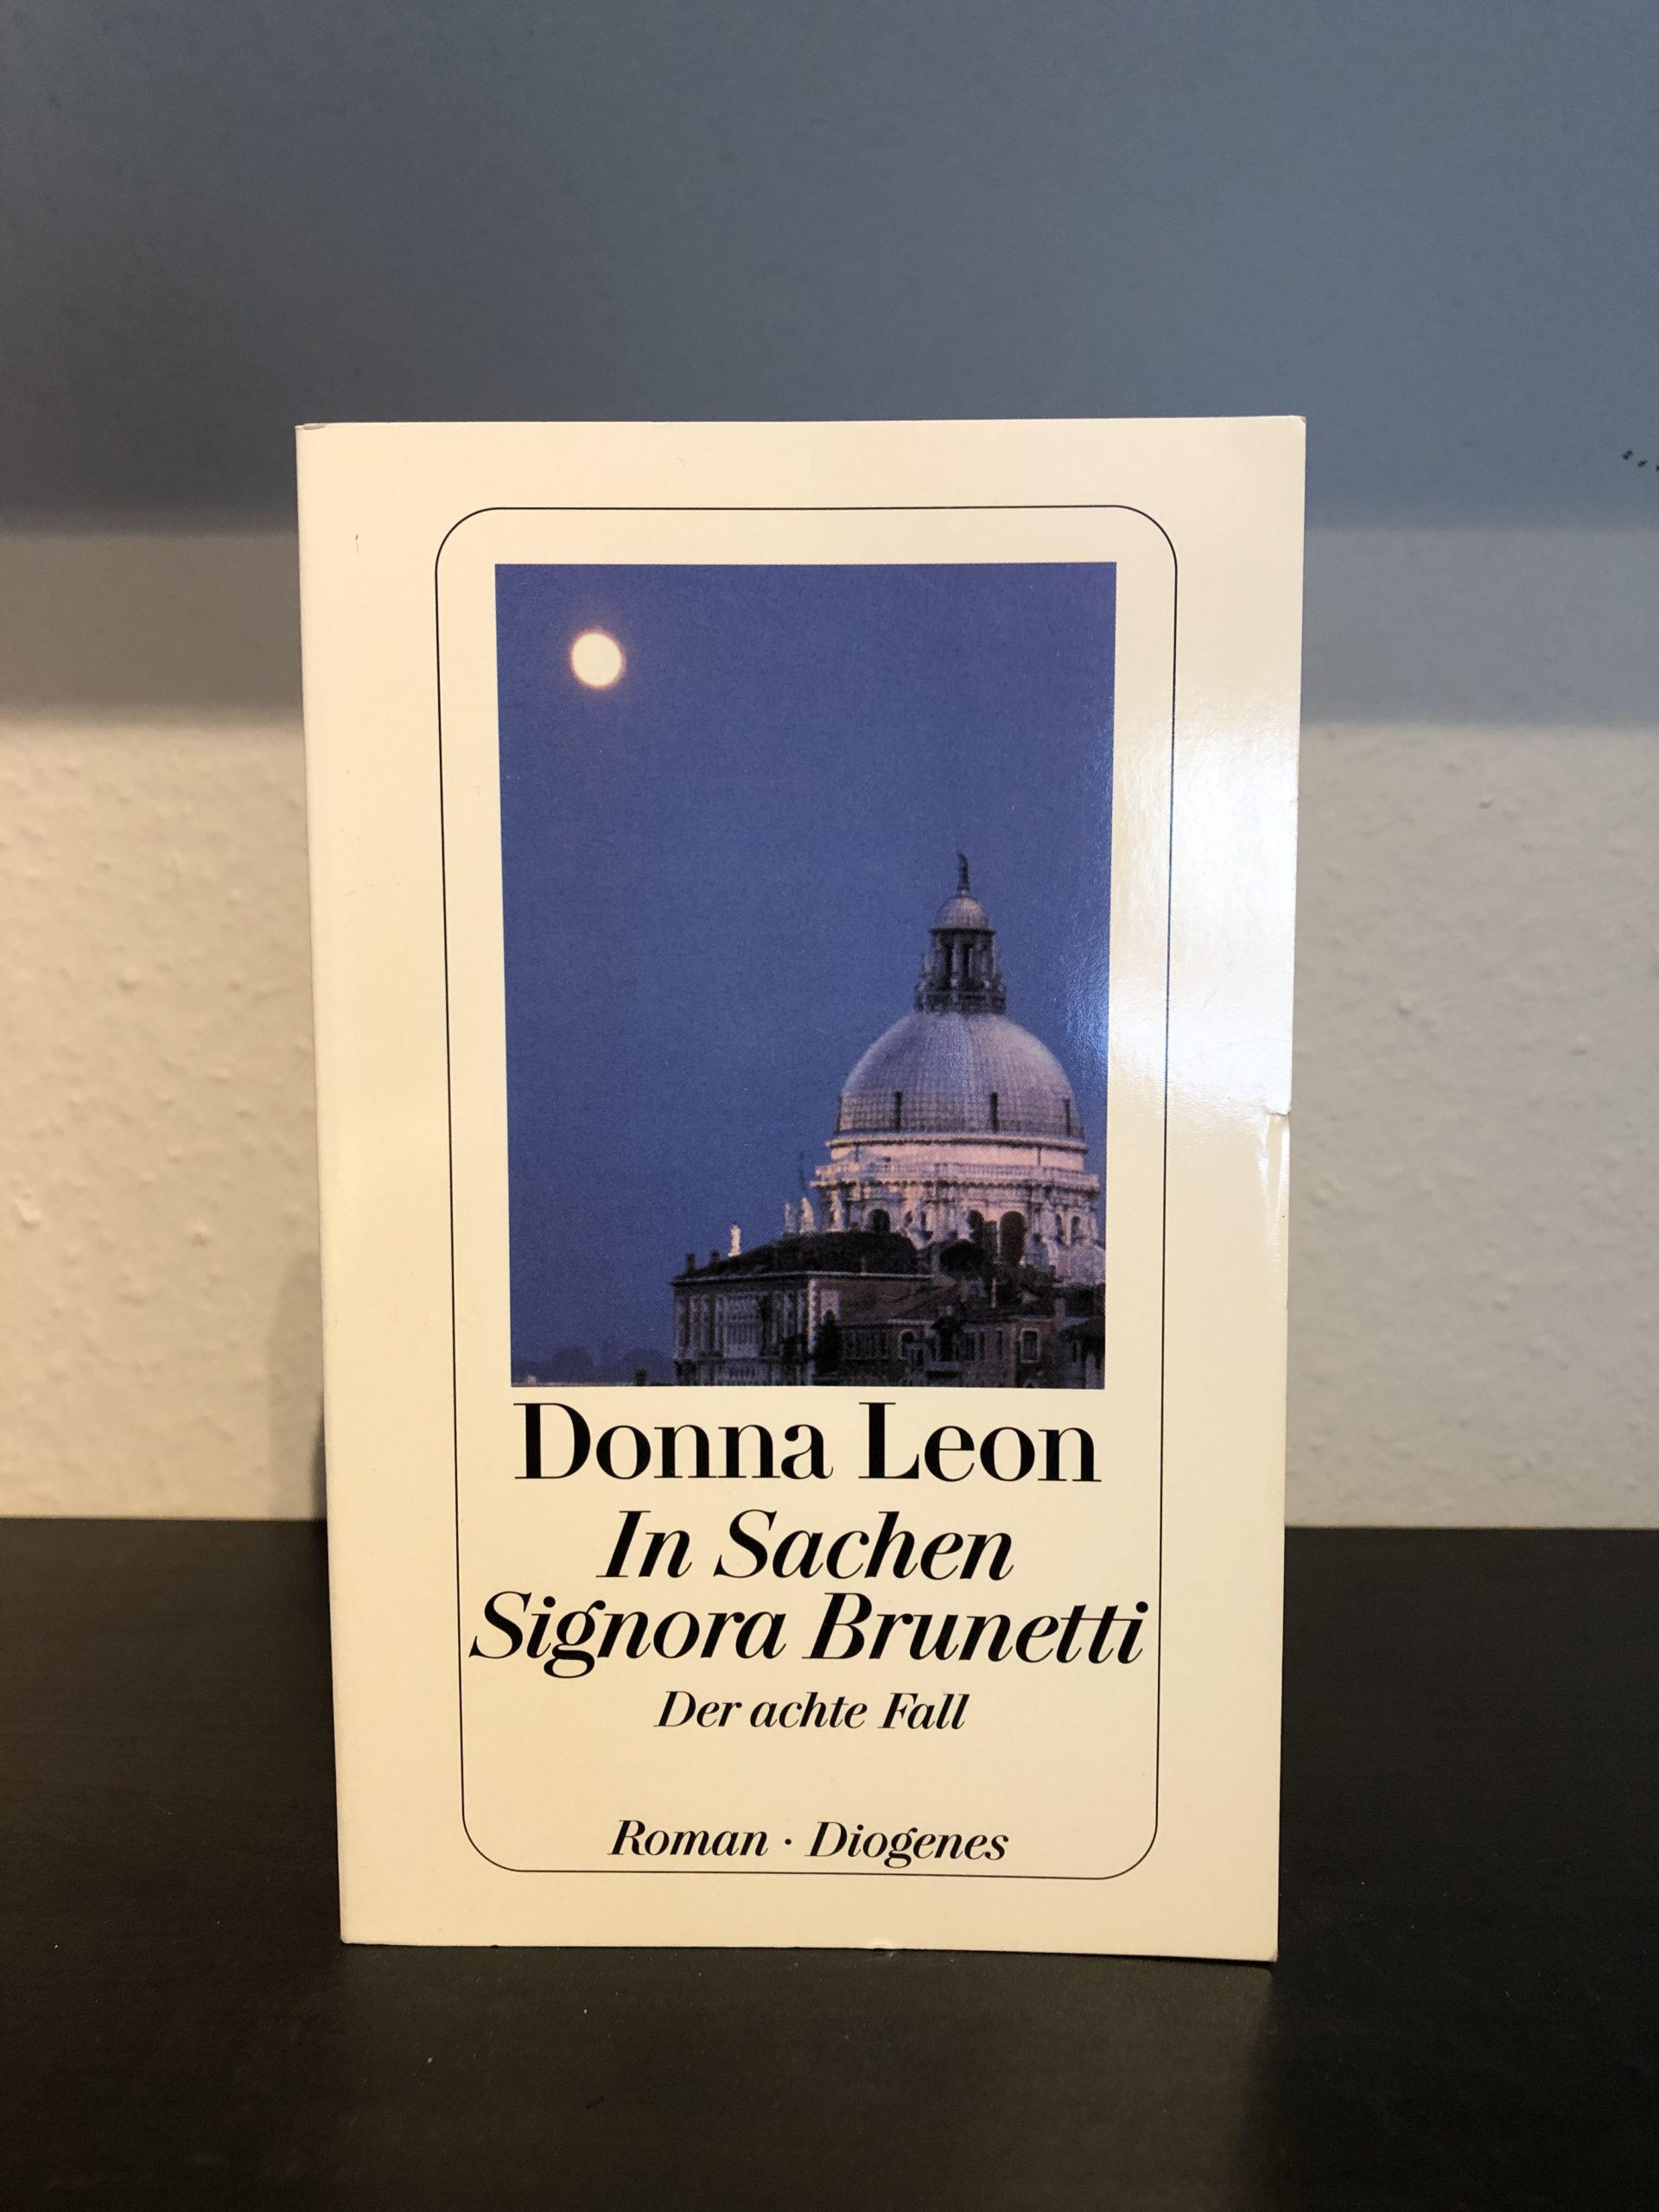 In Sachen Signora Brunetti - Der achte Fall - Donna Leon-image